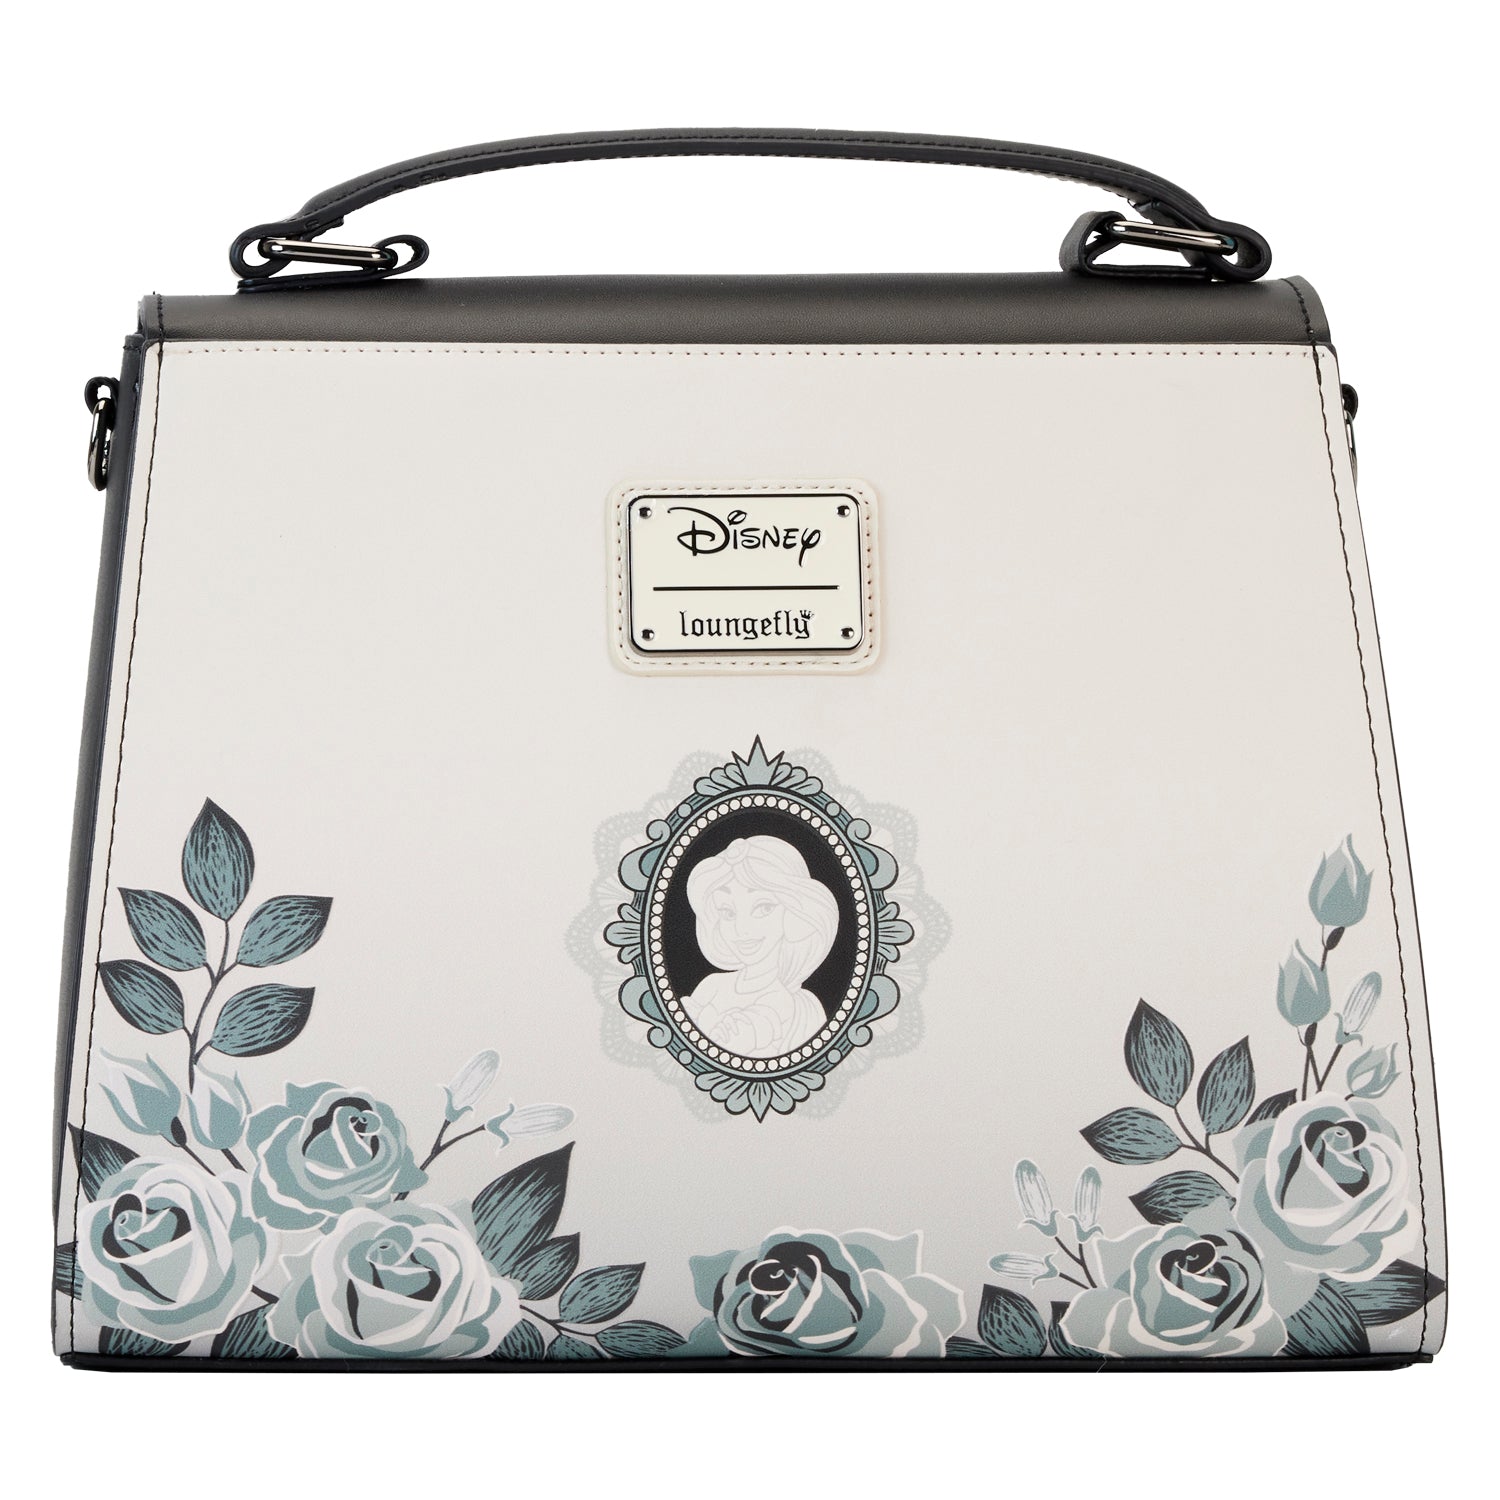 Loungefly Disney Princess Cameos Crossbody Bag